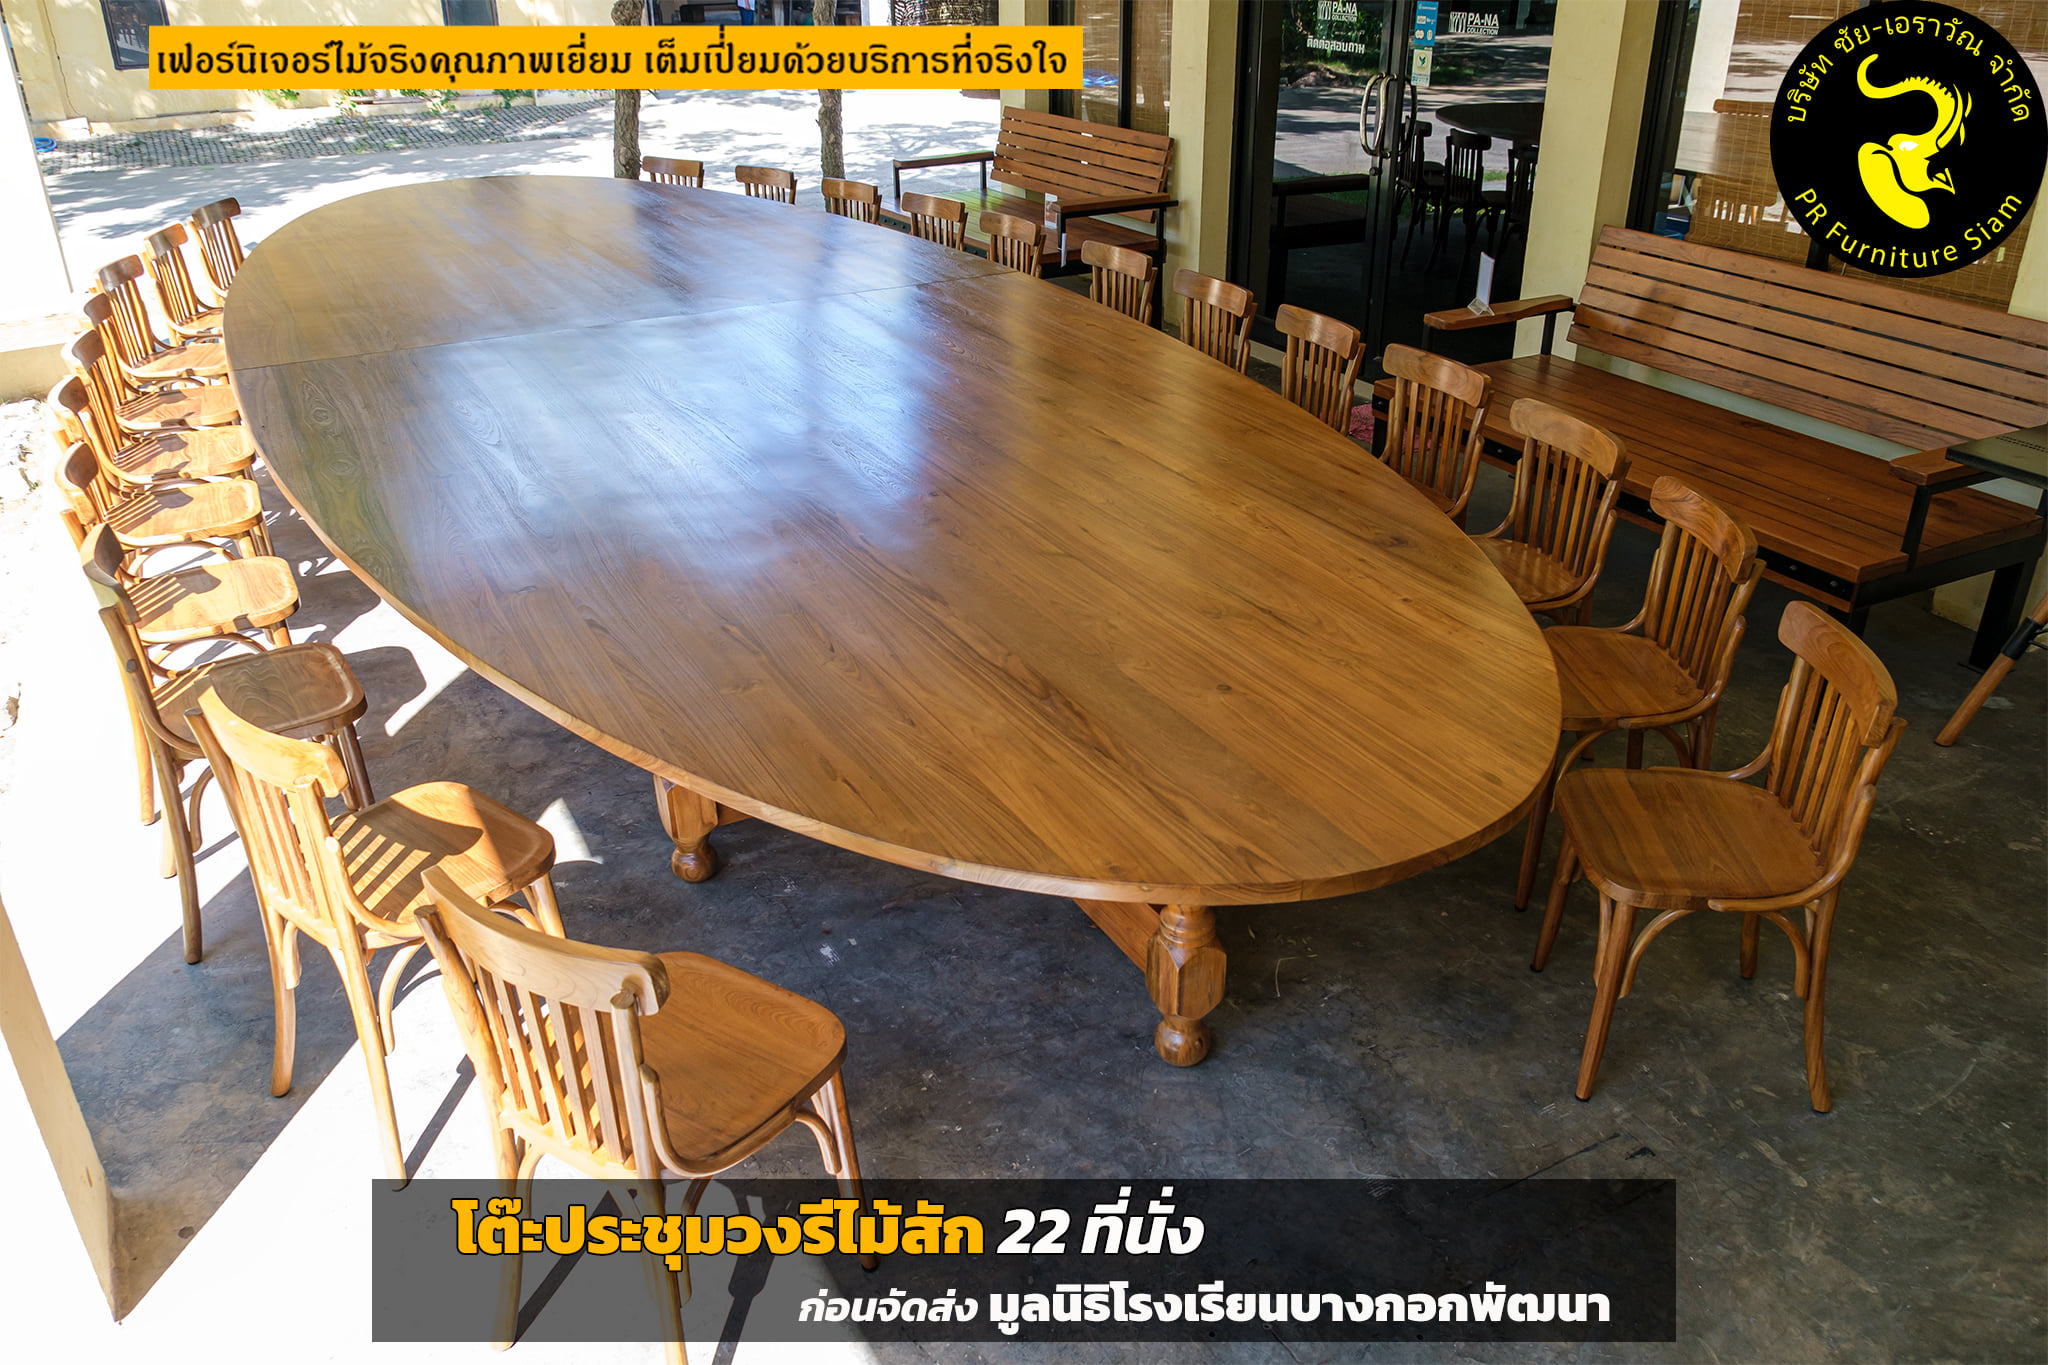 โต๊ะประชุมวงรีไม้สักขนาดใหญ่ 22 ที่นั่ง ดีไซน์แบบ Knockdown